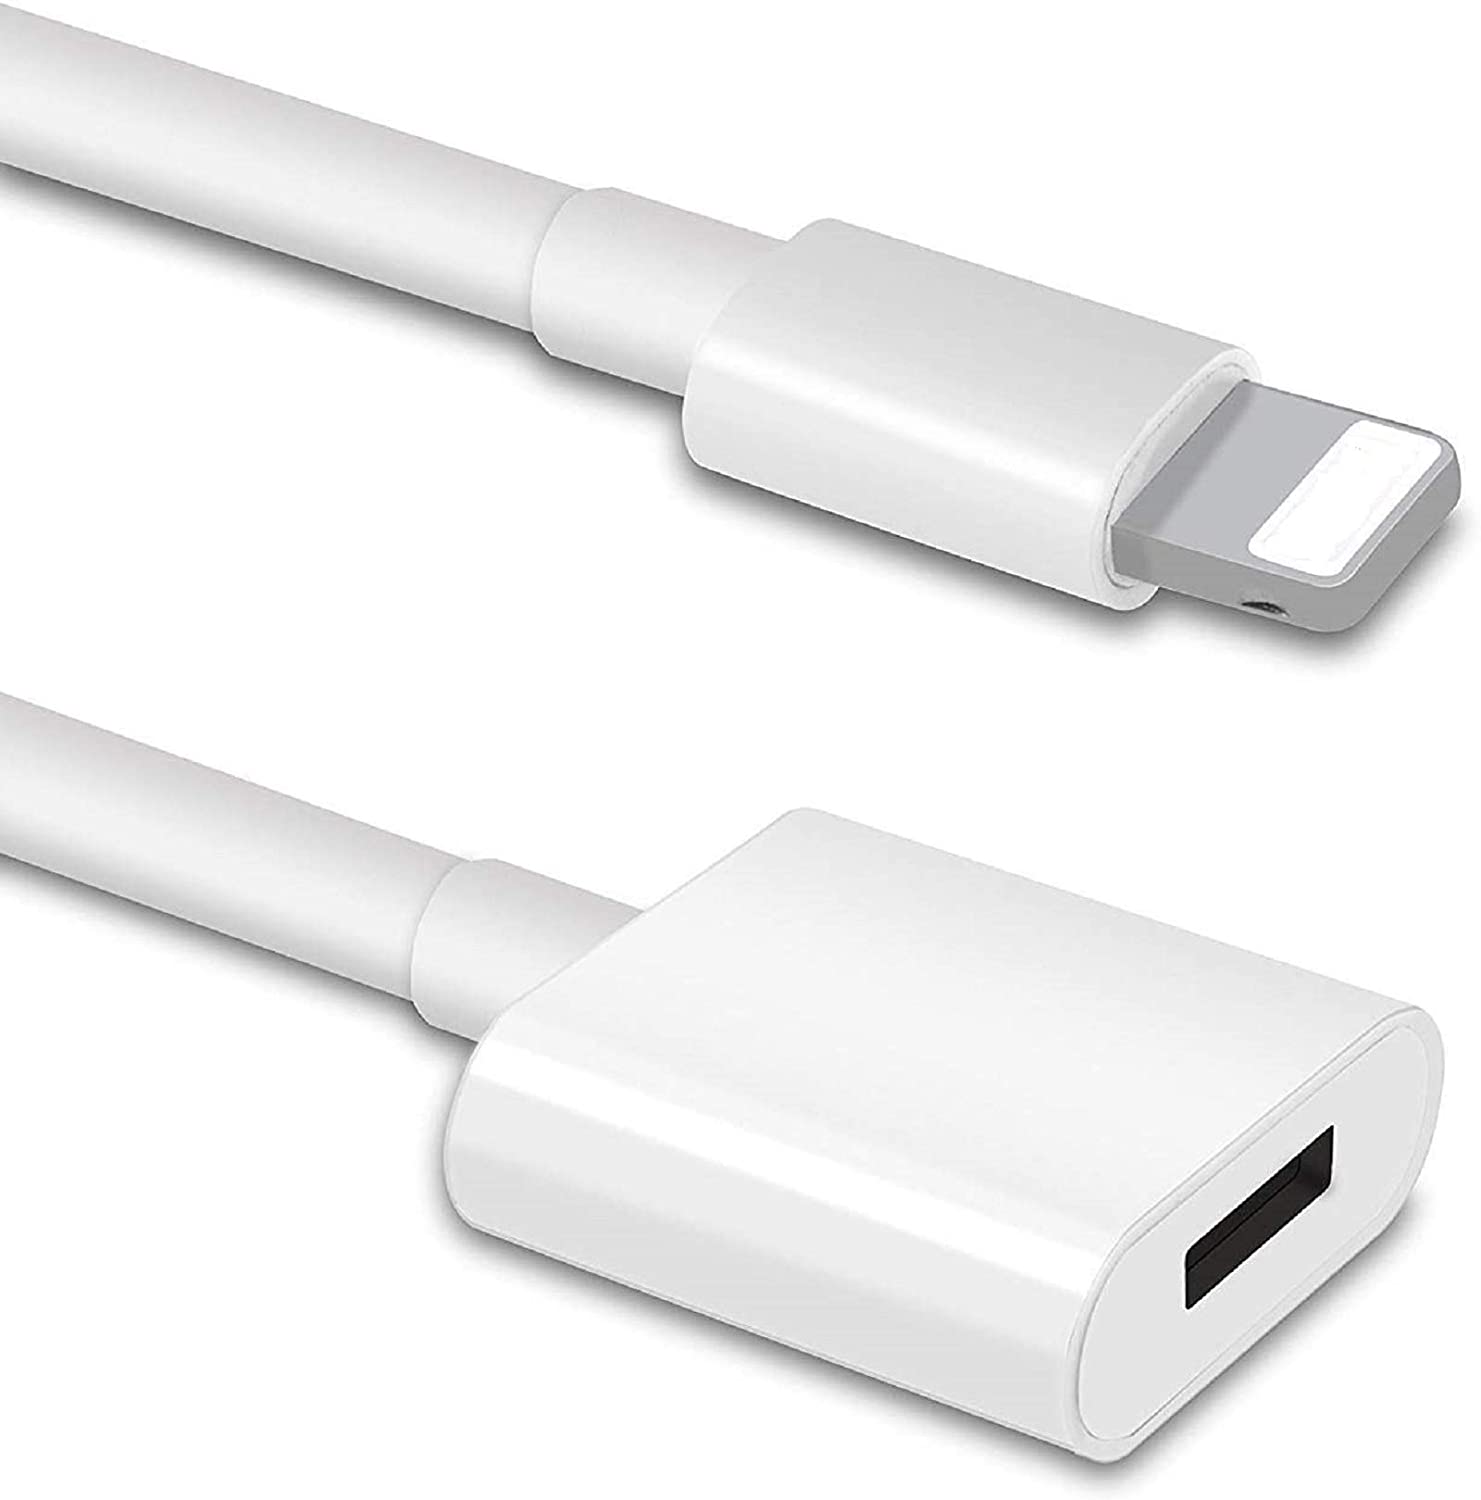 DESOFICON Cable de extensión de cargador para iPhone compatible con iPhone/iPad, macho a hembra, para video paso, datos, audio (6.6 pies/6.6 ft blanco)